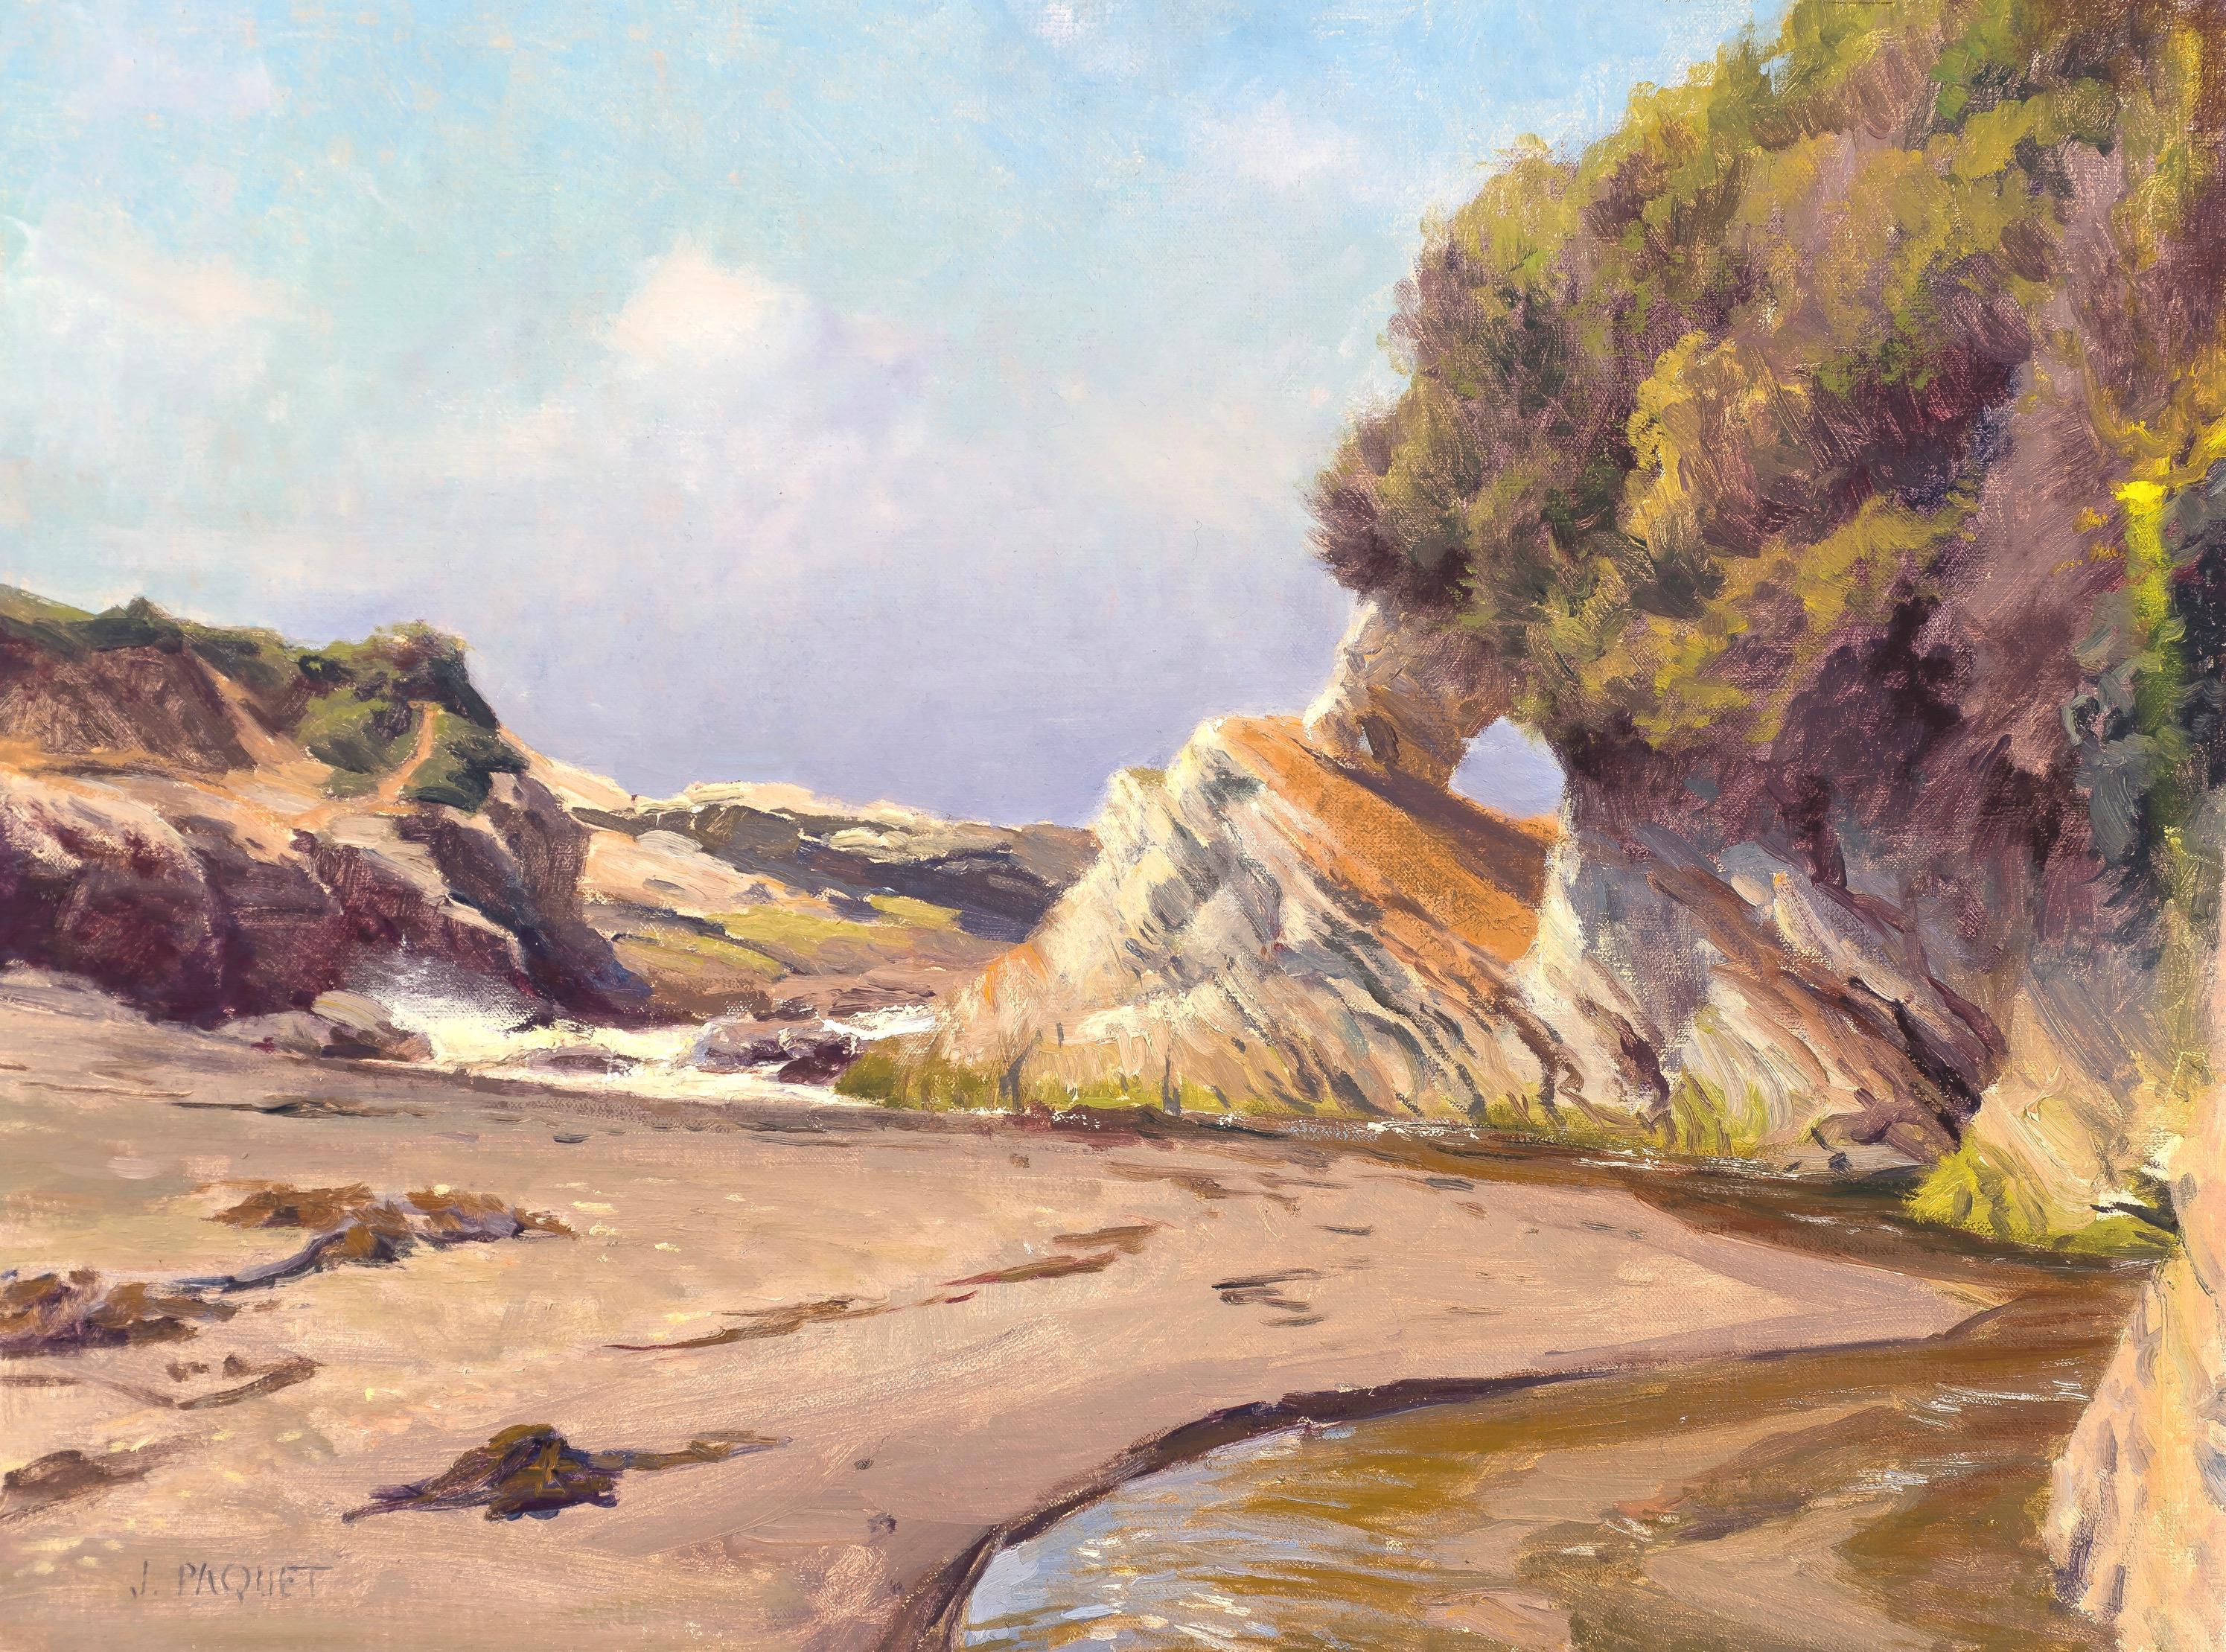 Joe Paquet  Landscape Painting - "Incoming Tide, Spooners Cave" contemporary realist landscape en plein air